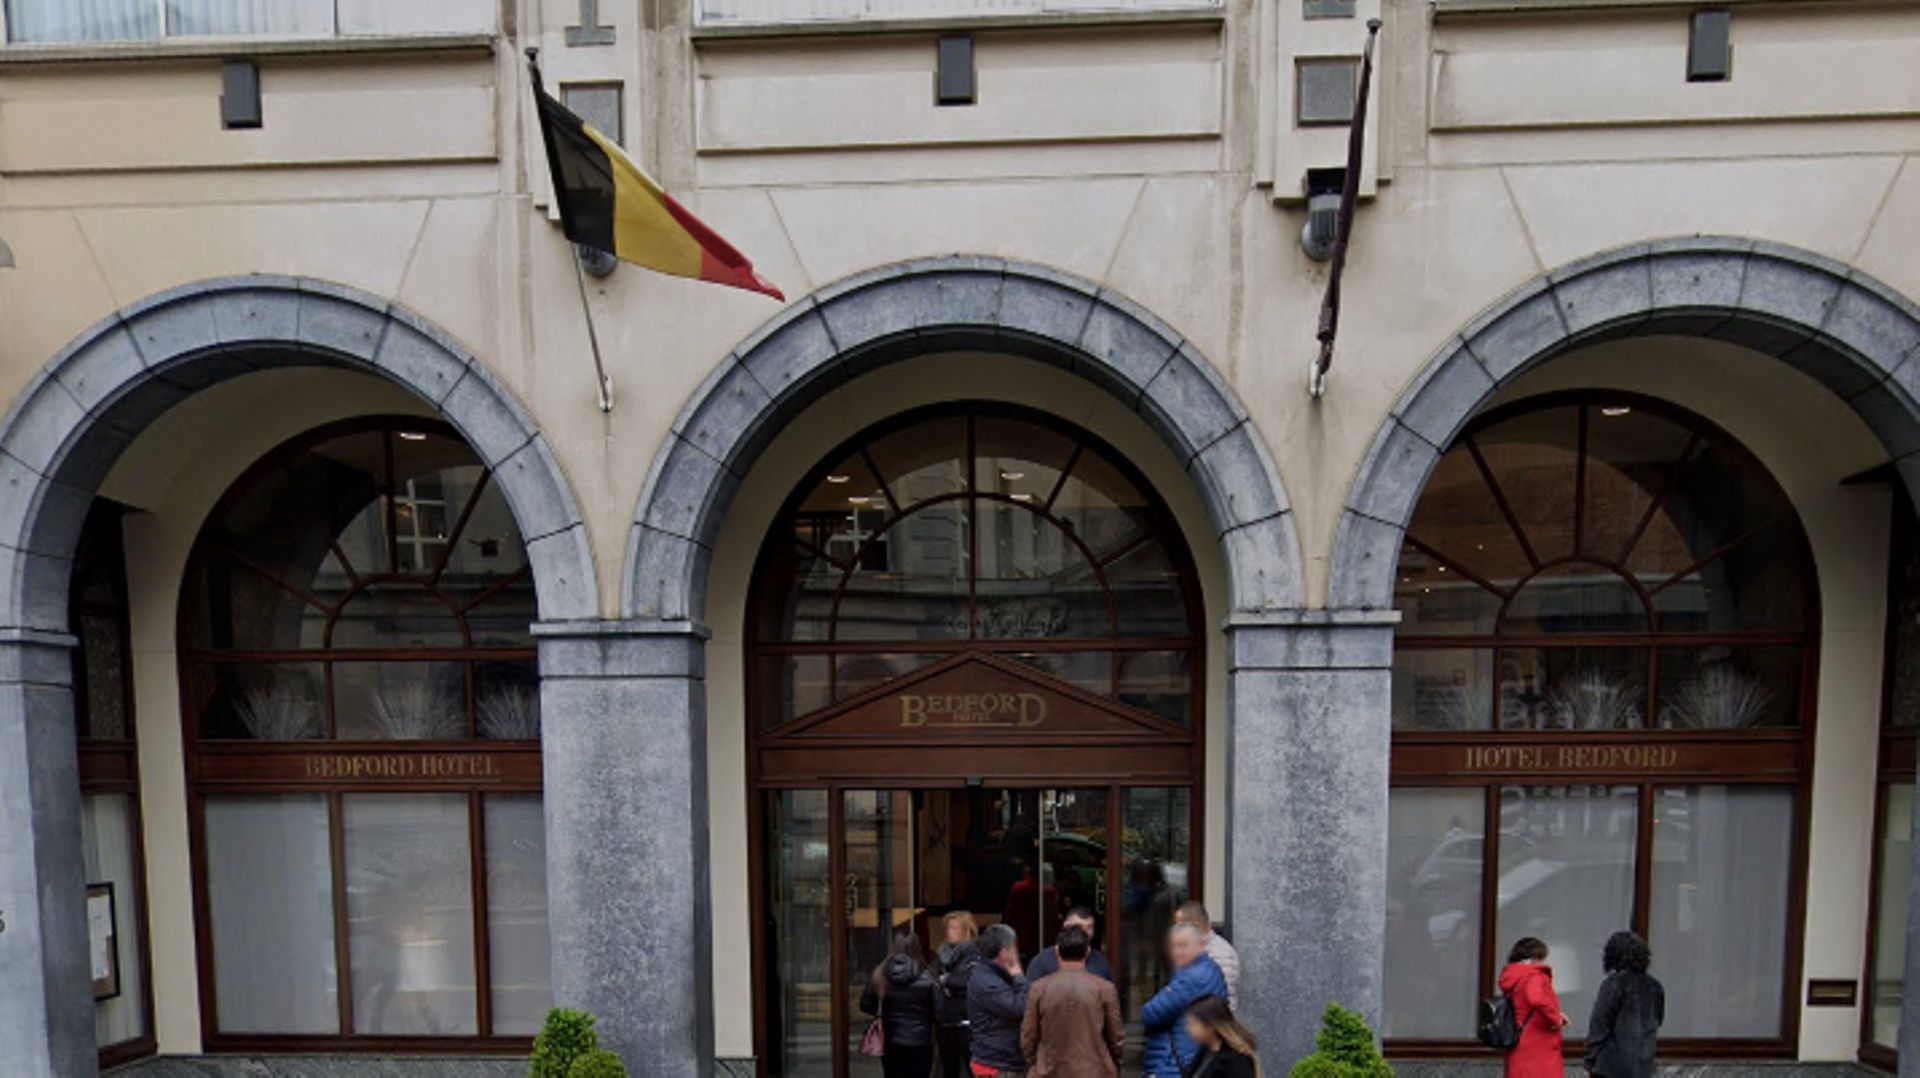 L'hôtel Bedford, situé Rue du Midi dans le centre de Bruxelles, comptabilise déjà 800 nuitées de perdues pour un montant de 100 000 euros.

